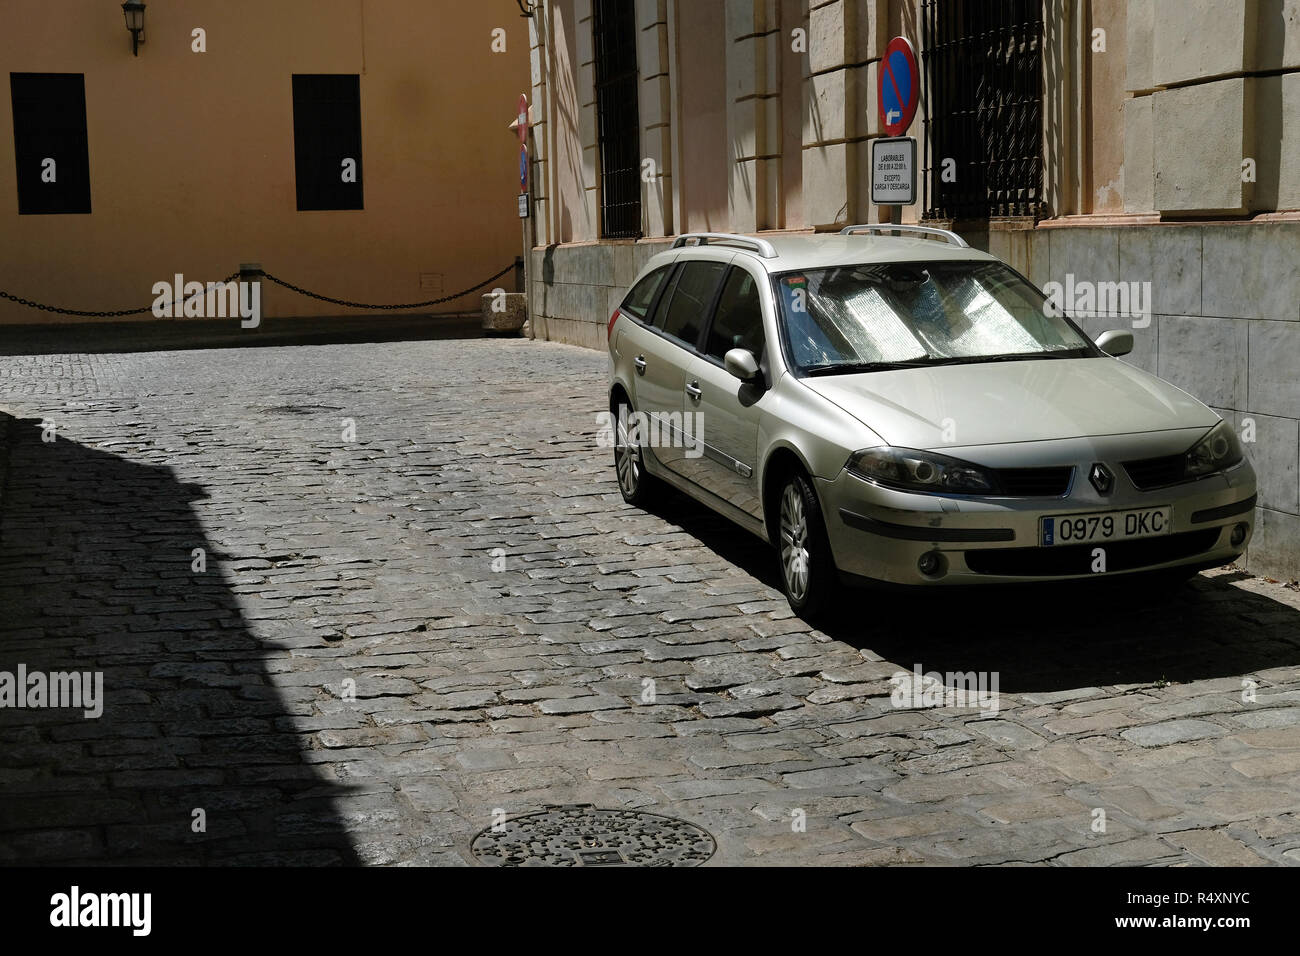 Ein Auto mit einem silbernen Schirm die Sonne in Spanien widerspiegeln Stockfoto